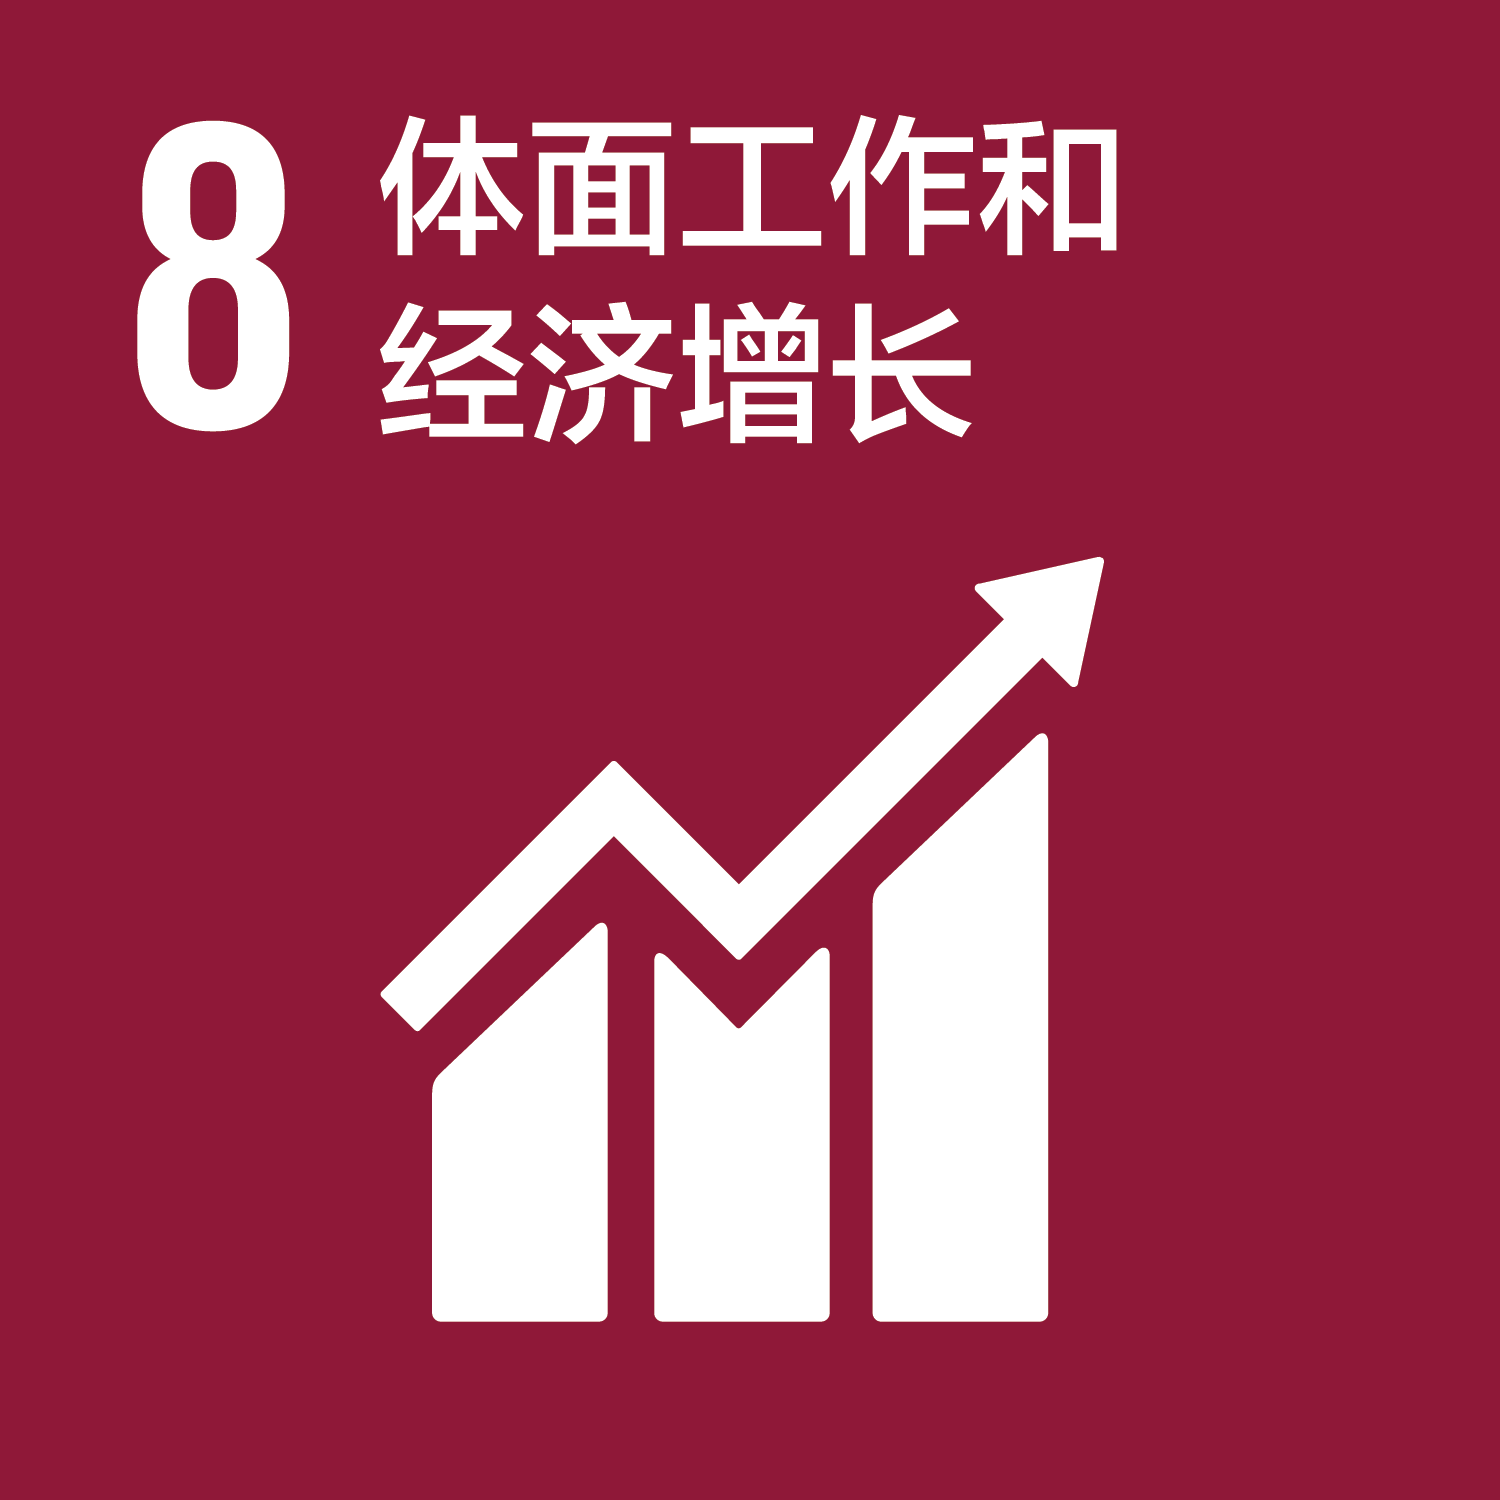 可持续发展目标-8体面工作和经济增长